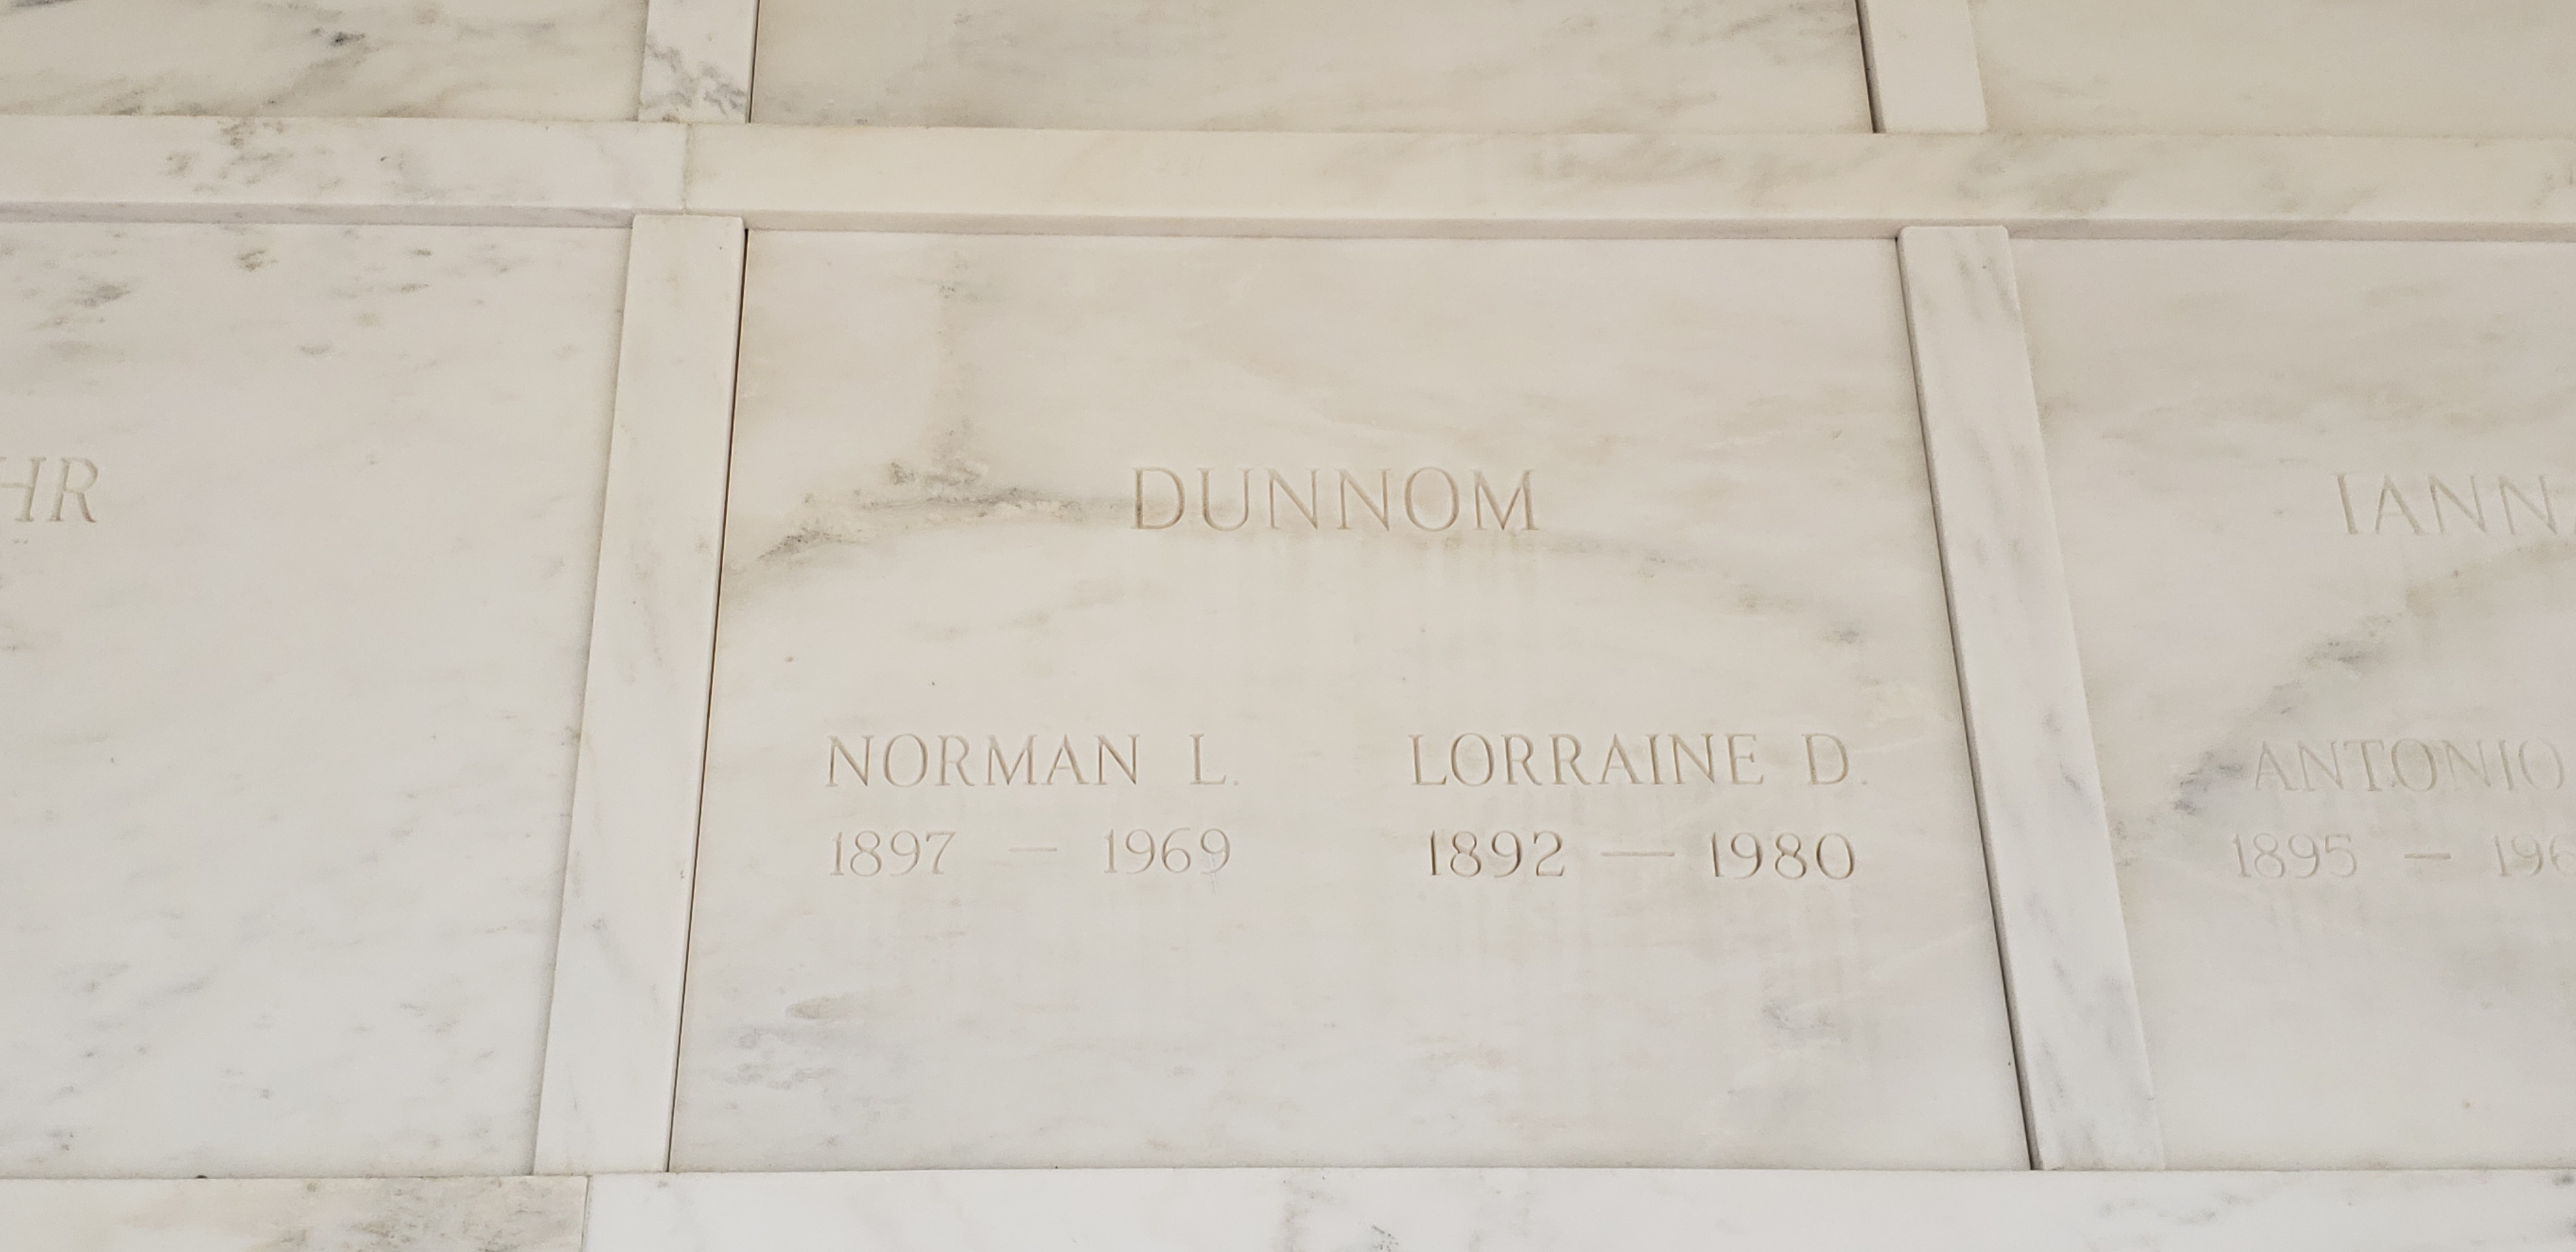 Norman L Dunnom